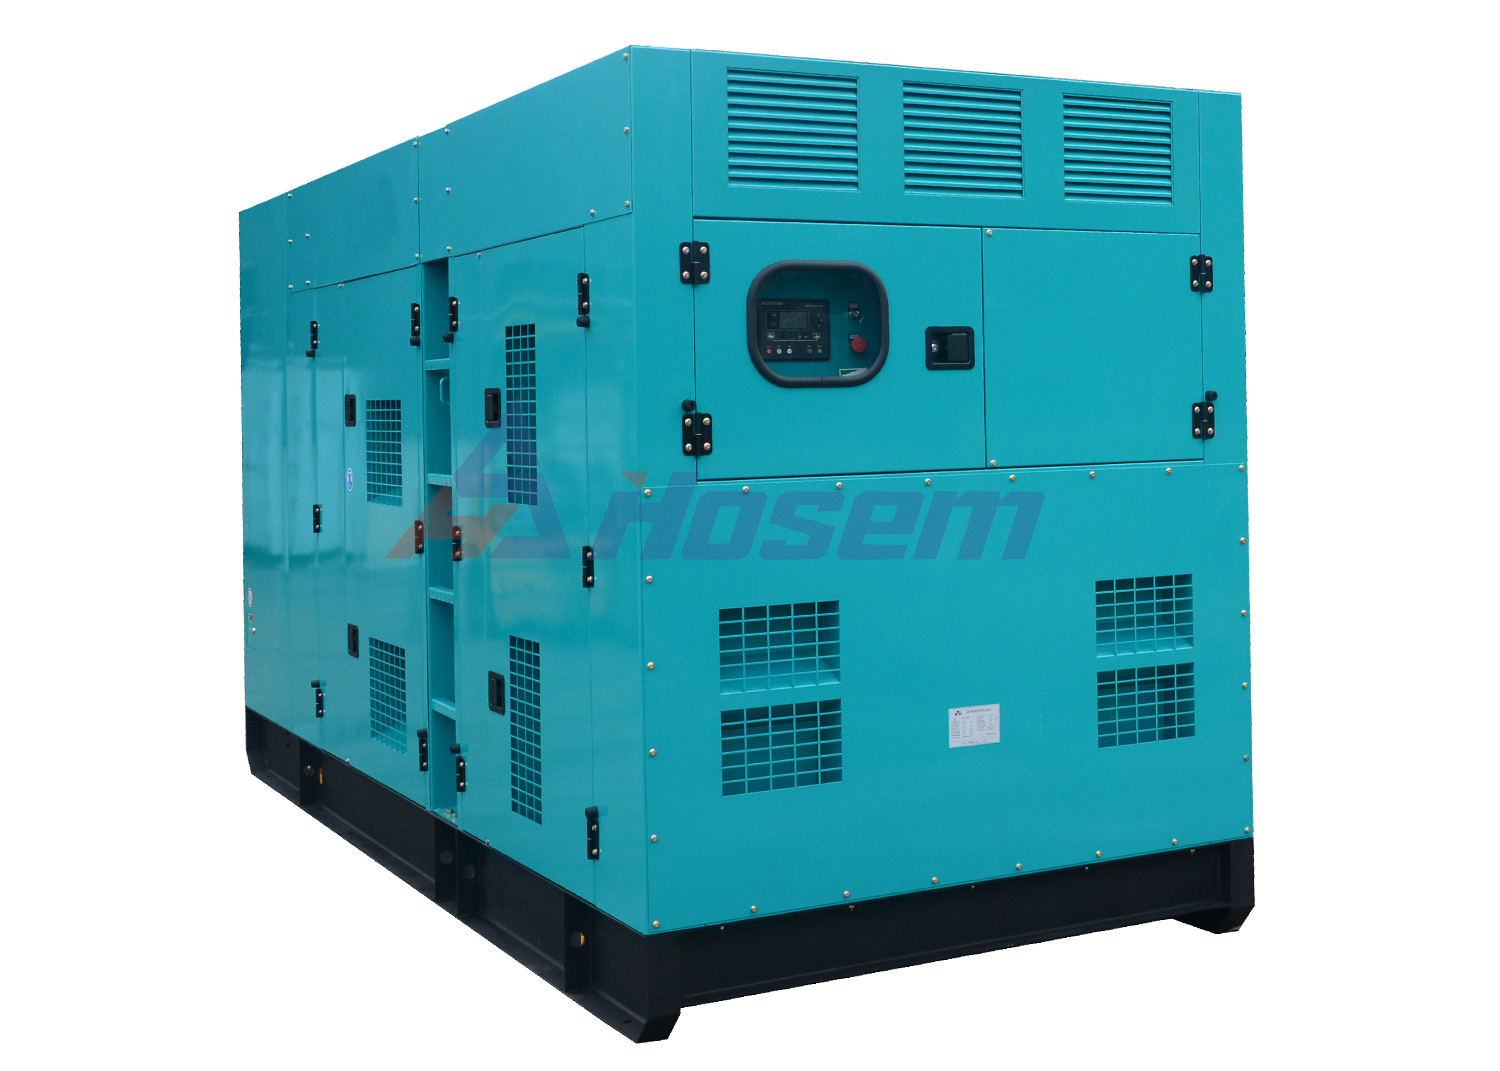 50Hz Perkins Generator Set Rated Power 400kVA For Industrial , Outdoor Generator Set